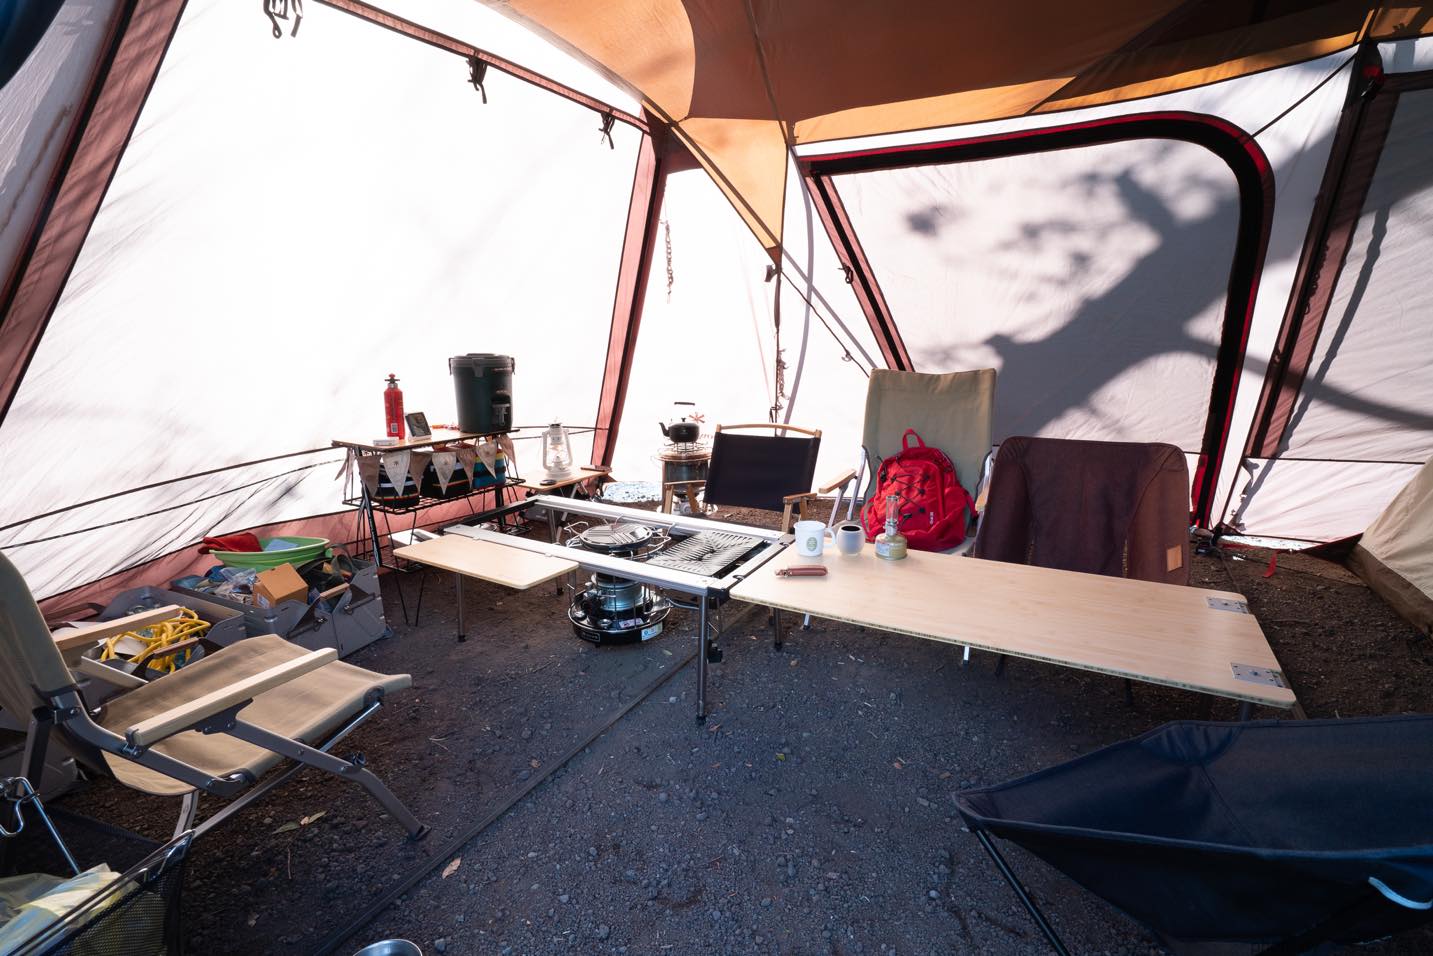 冬キャンプのすすめ 冬キャンプのテントや必需品は 電気毛布いる ストーブどうする にお答えします ママはずぼら ファミリーキャンプを応援するブログ